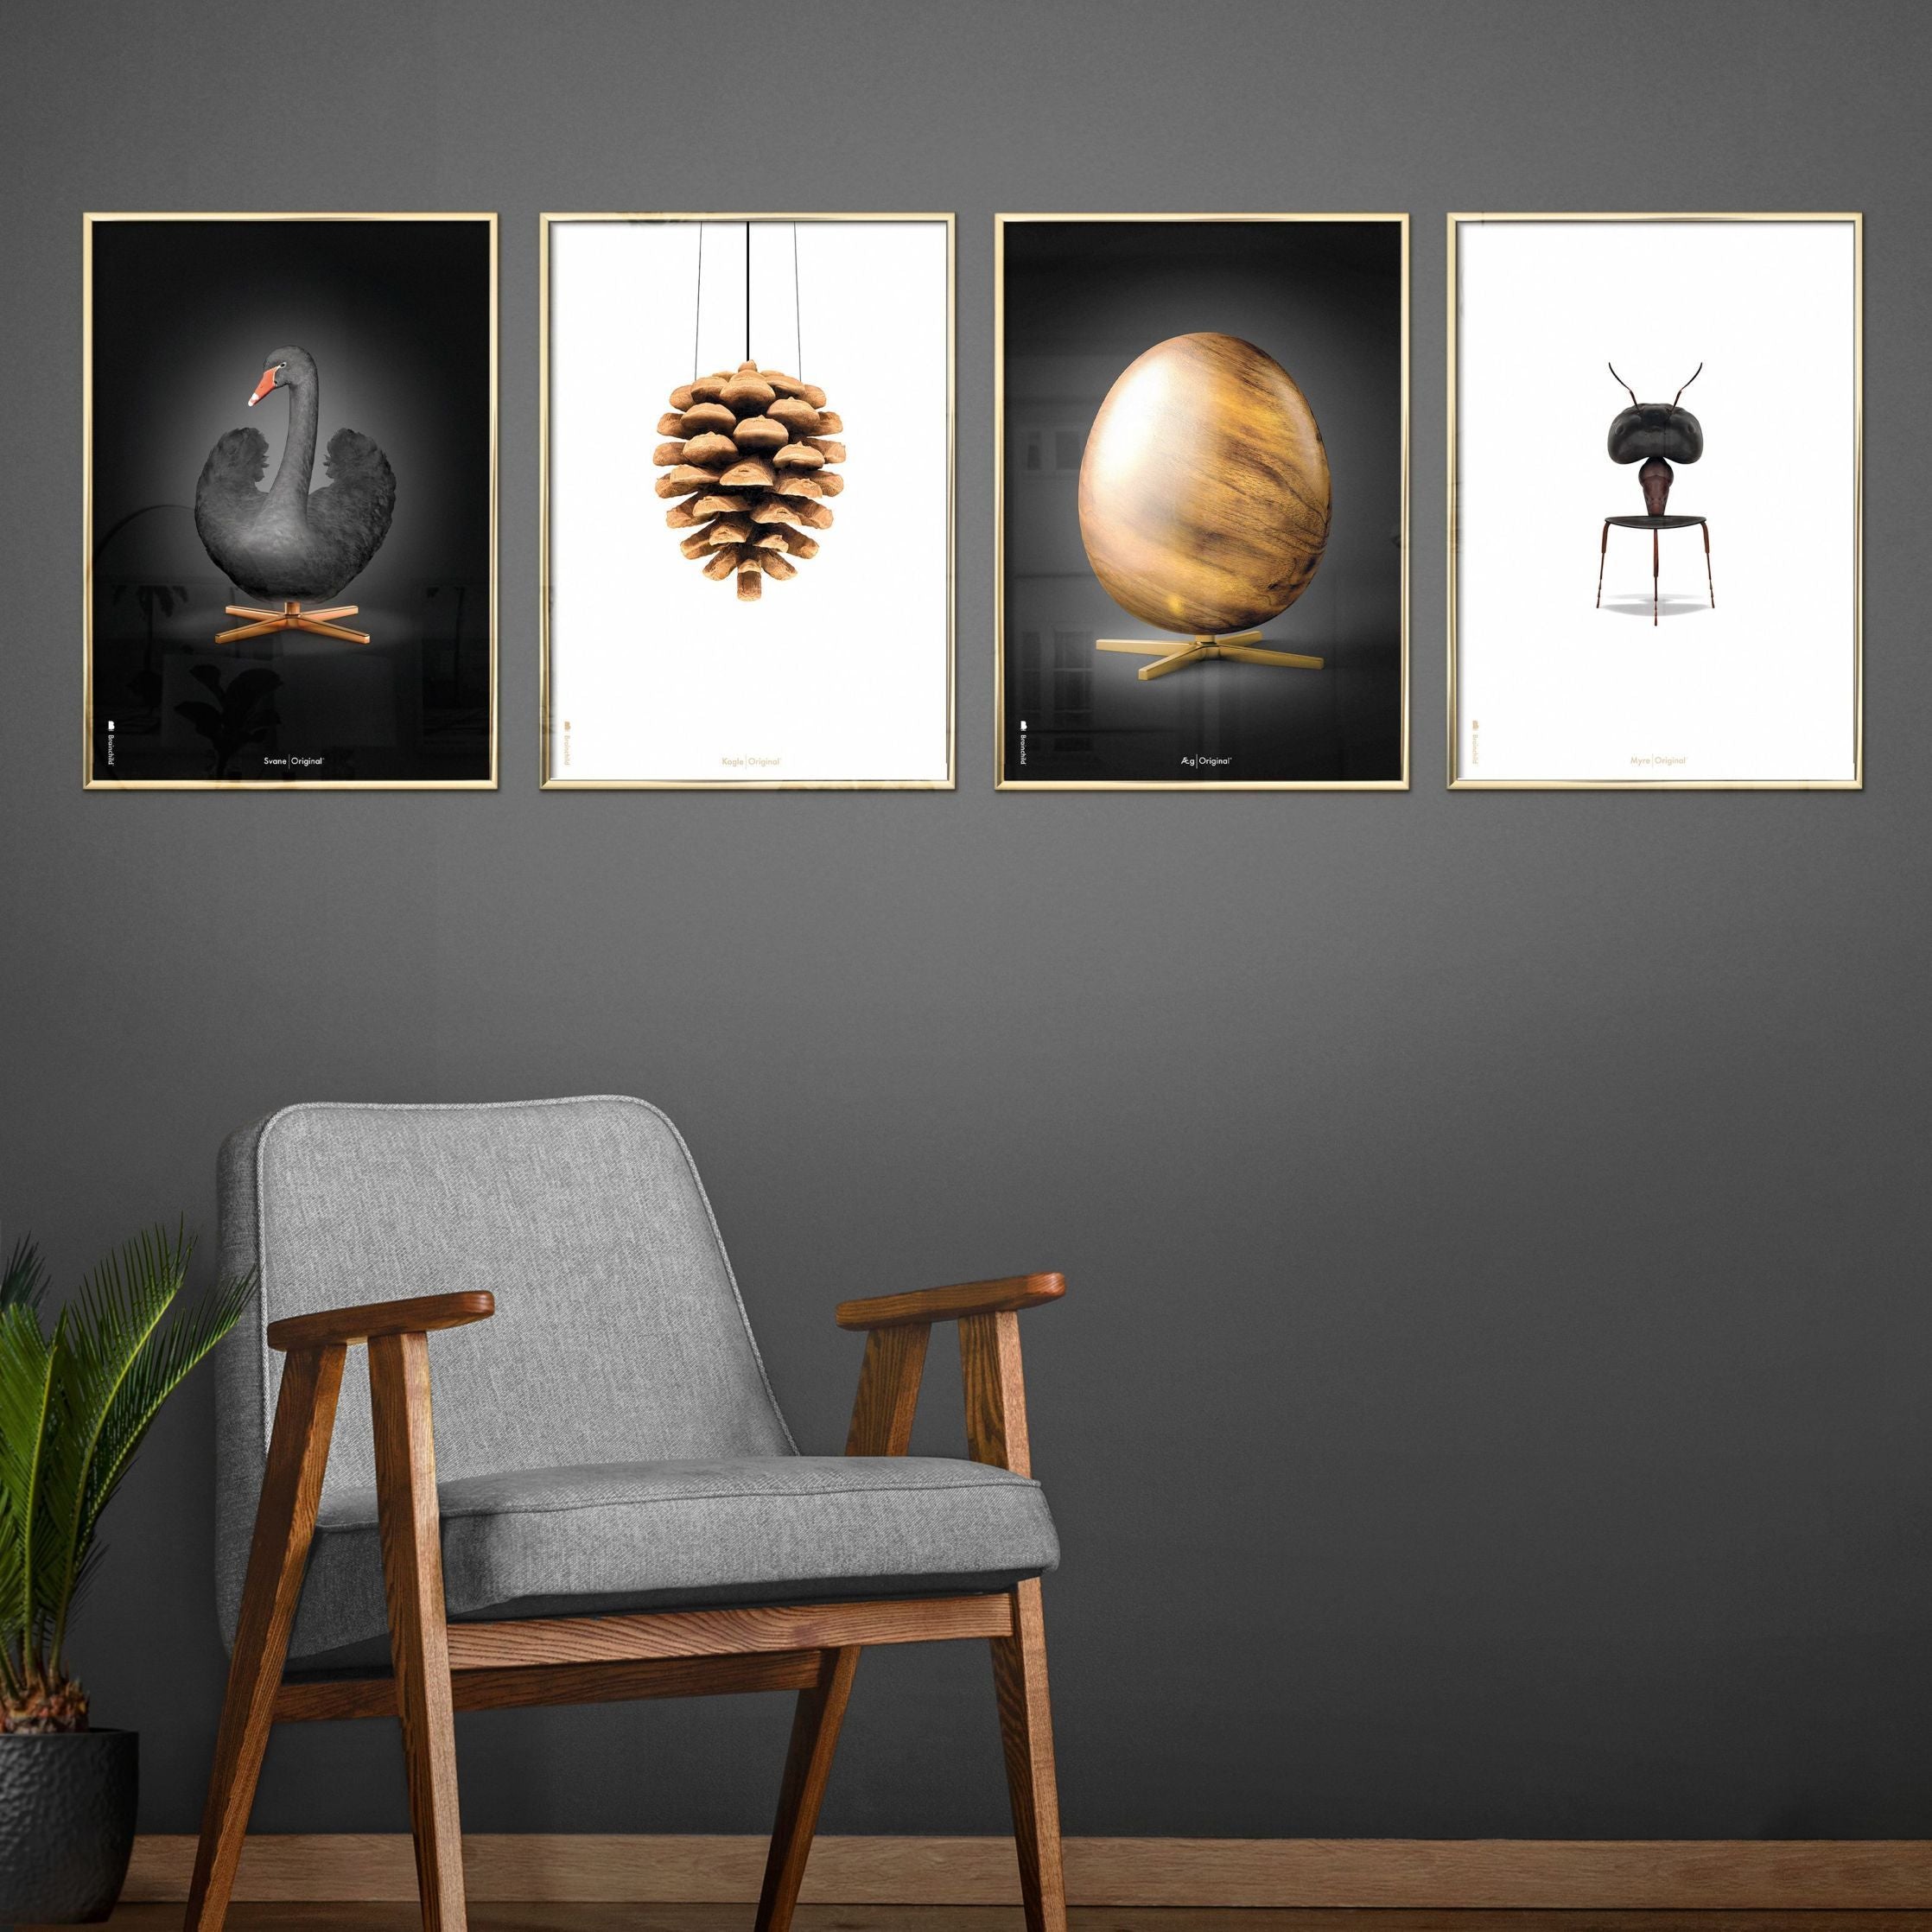 brainchild Ant Classic Poster, frame gemaakt van licht hout 70x100 cm, witte achtergrond